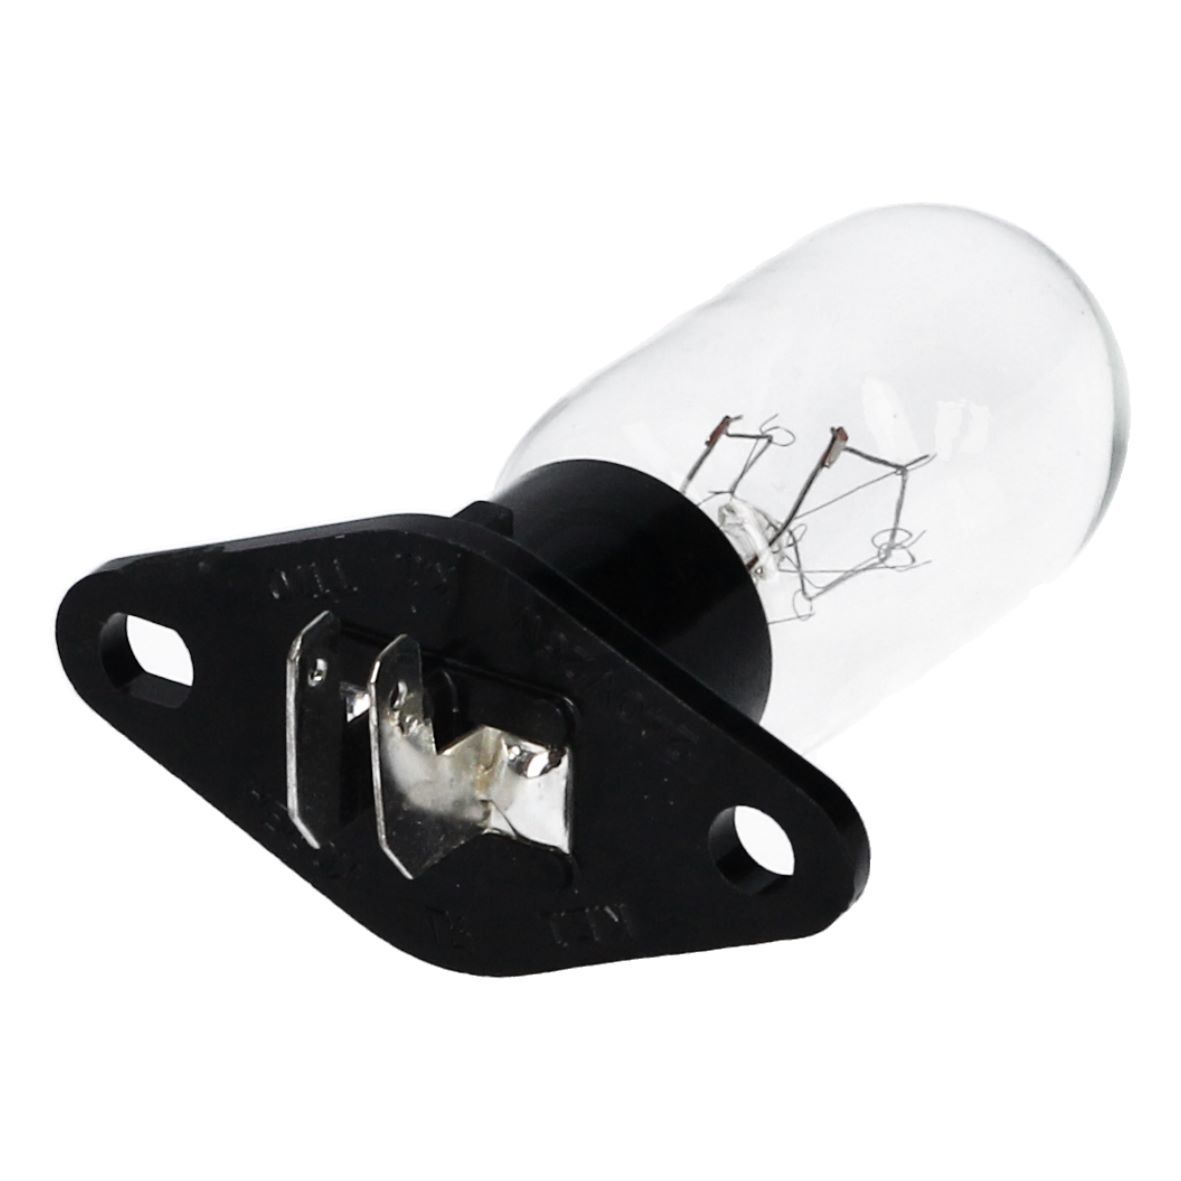 Lampe wie BOSCH 00606322 20W 230V mit Befestigungssockel 2x4,8mmAMP für Mikrowelle